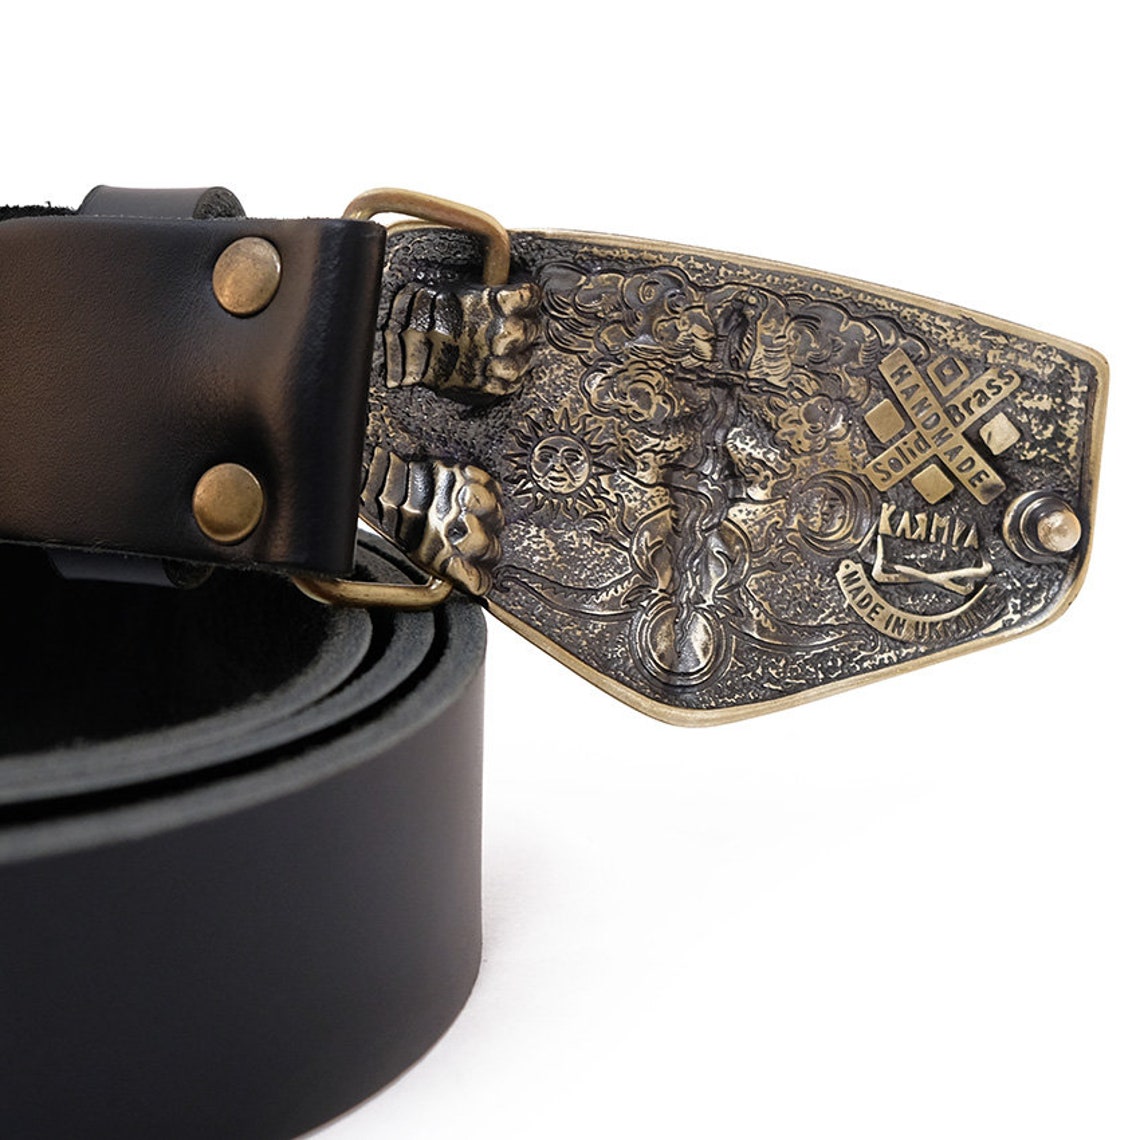 Leather belt with Archangel Michael buckle Saint Michael | Etsy